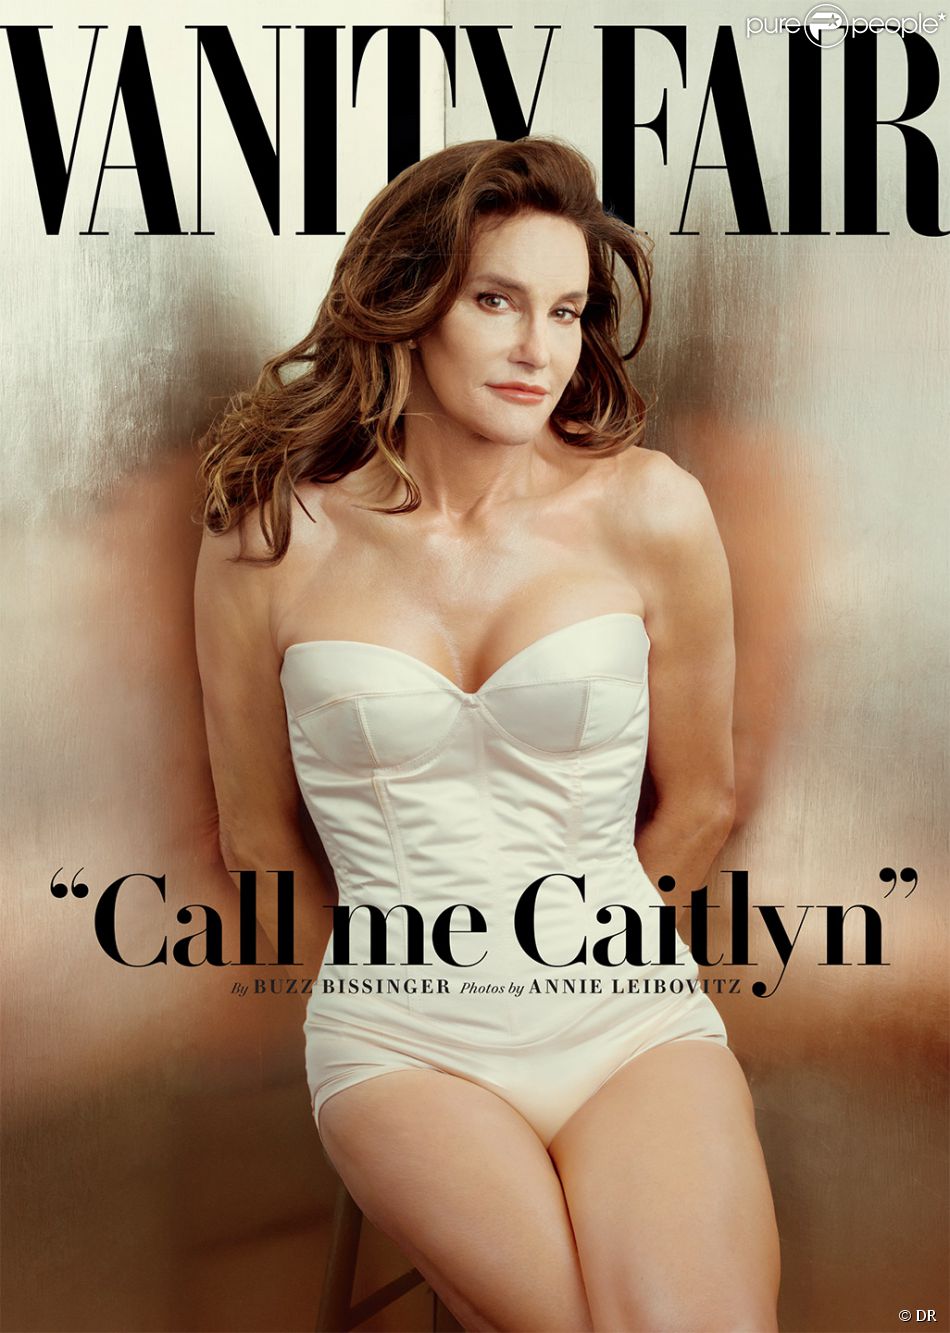  Caitlyn Jenner (anciennement Bruce Jenner), photographi&amp;eacute;e par Annie Leibovitz pour Vanity Fair. Num&amp;eacute;ro de juillet 2015. 